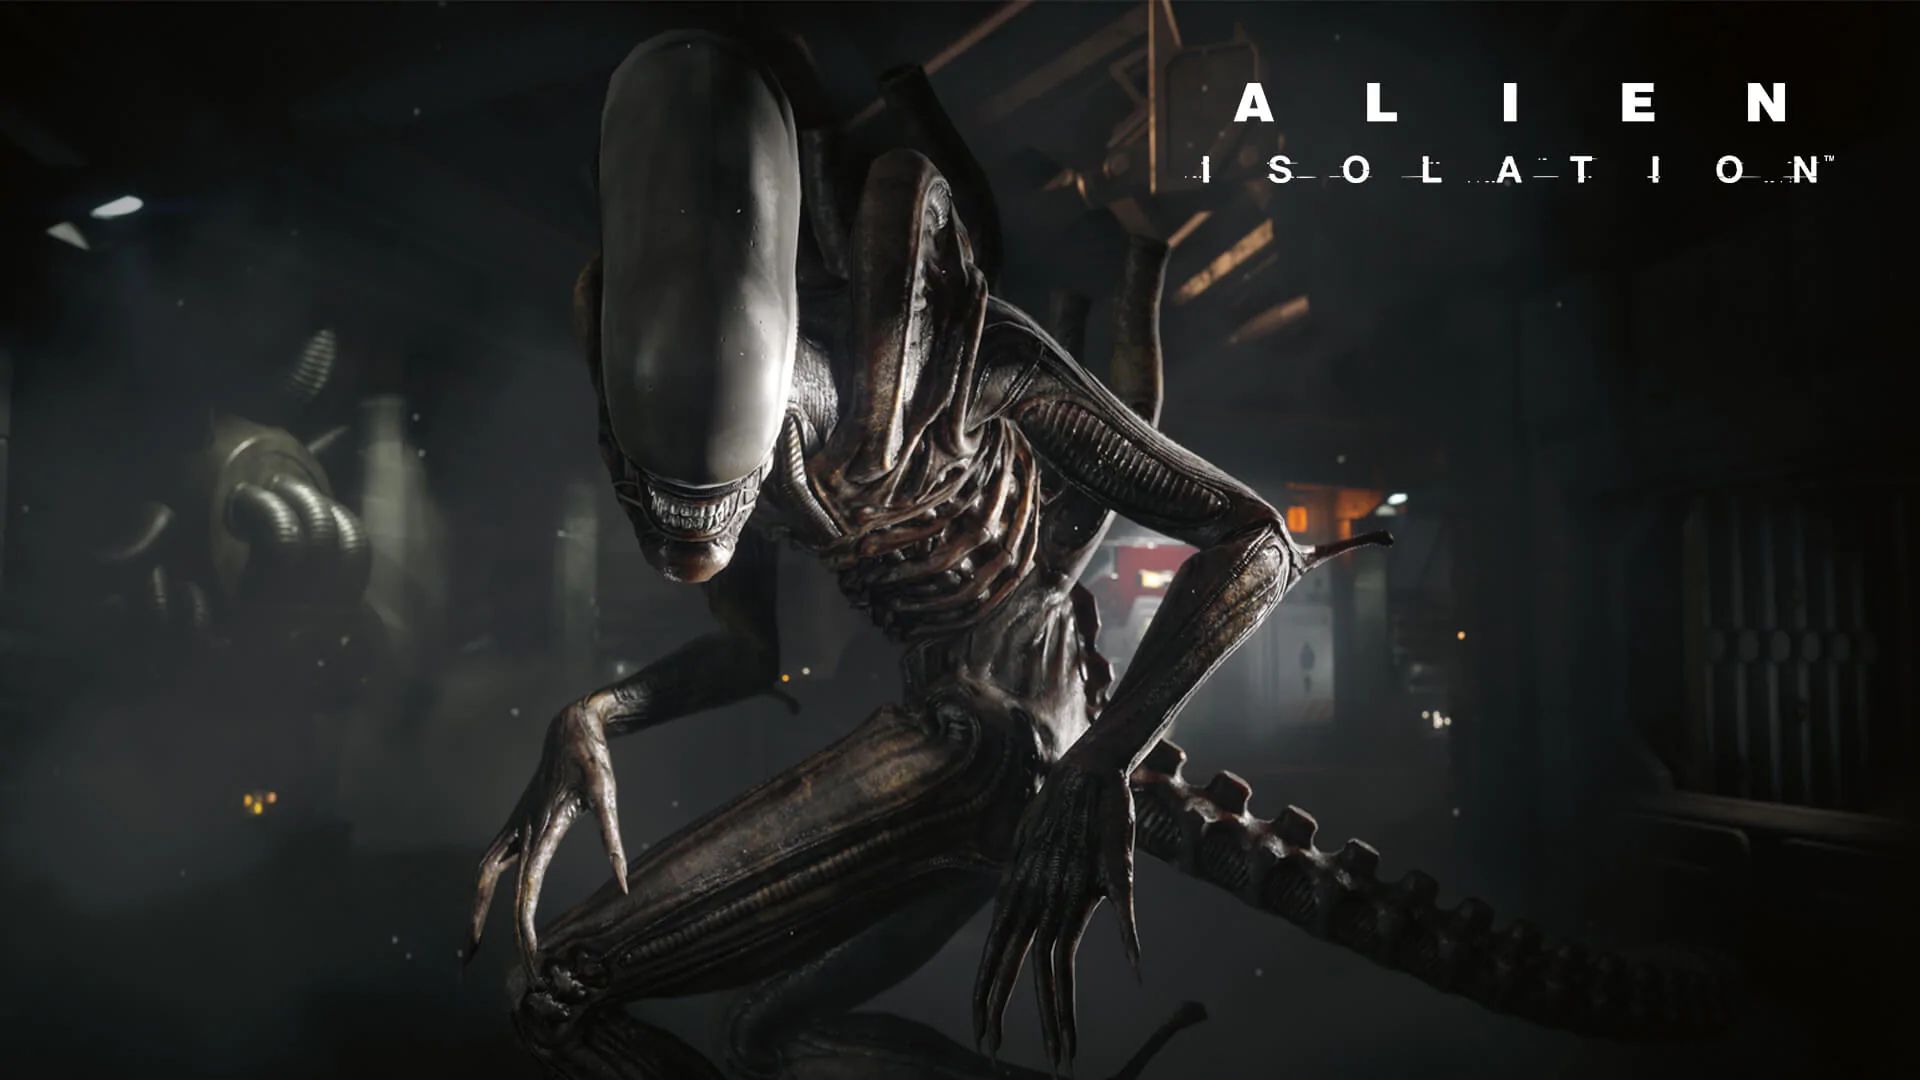 映画「エイリアン」のホラーゲーム『Alien: Isolation』のPC版がEpic Games Storeで無料配布中。Steamでは国内からは購入不可な一品_002